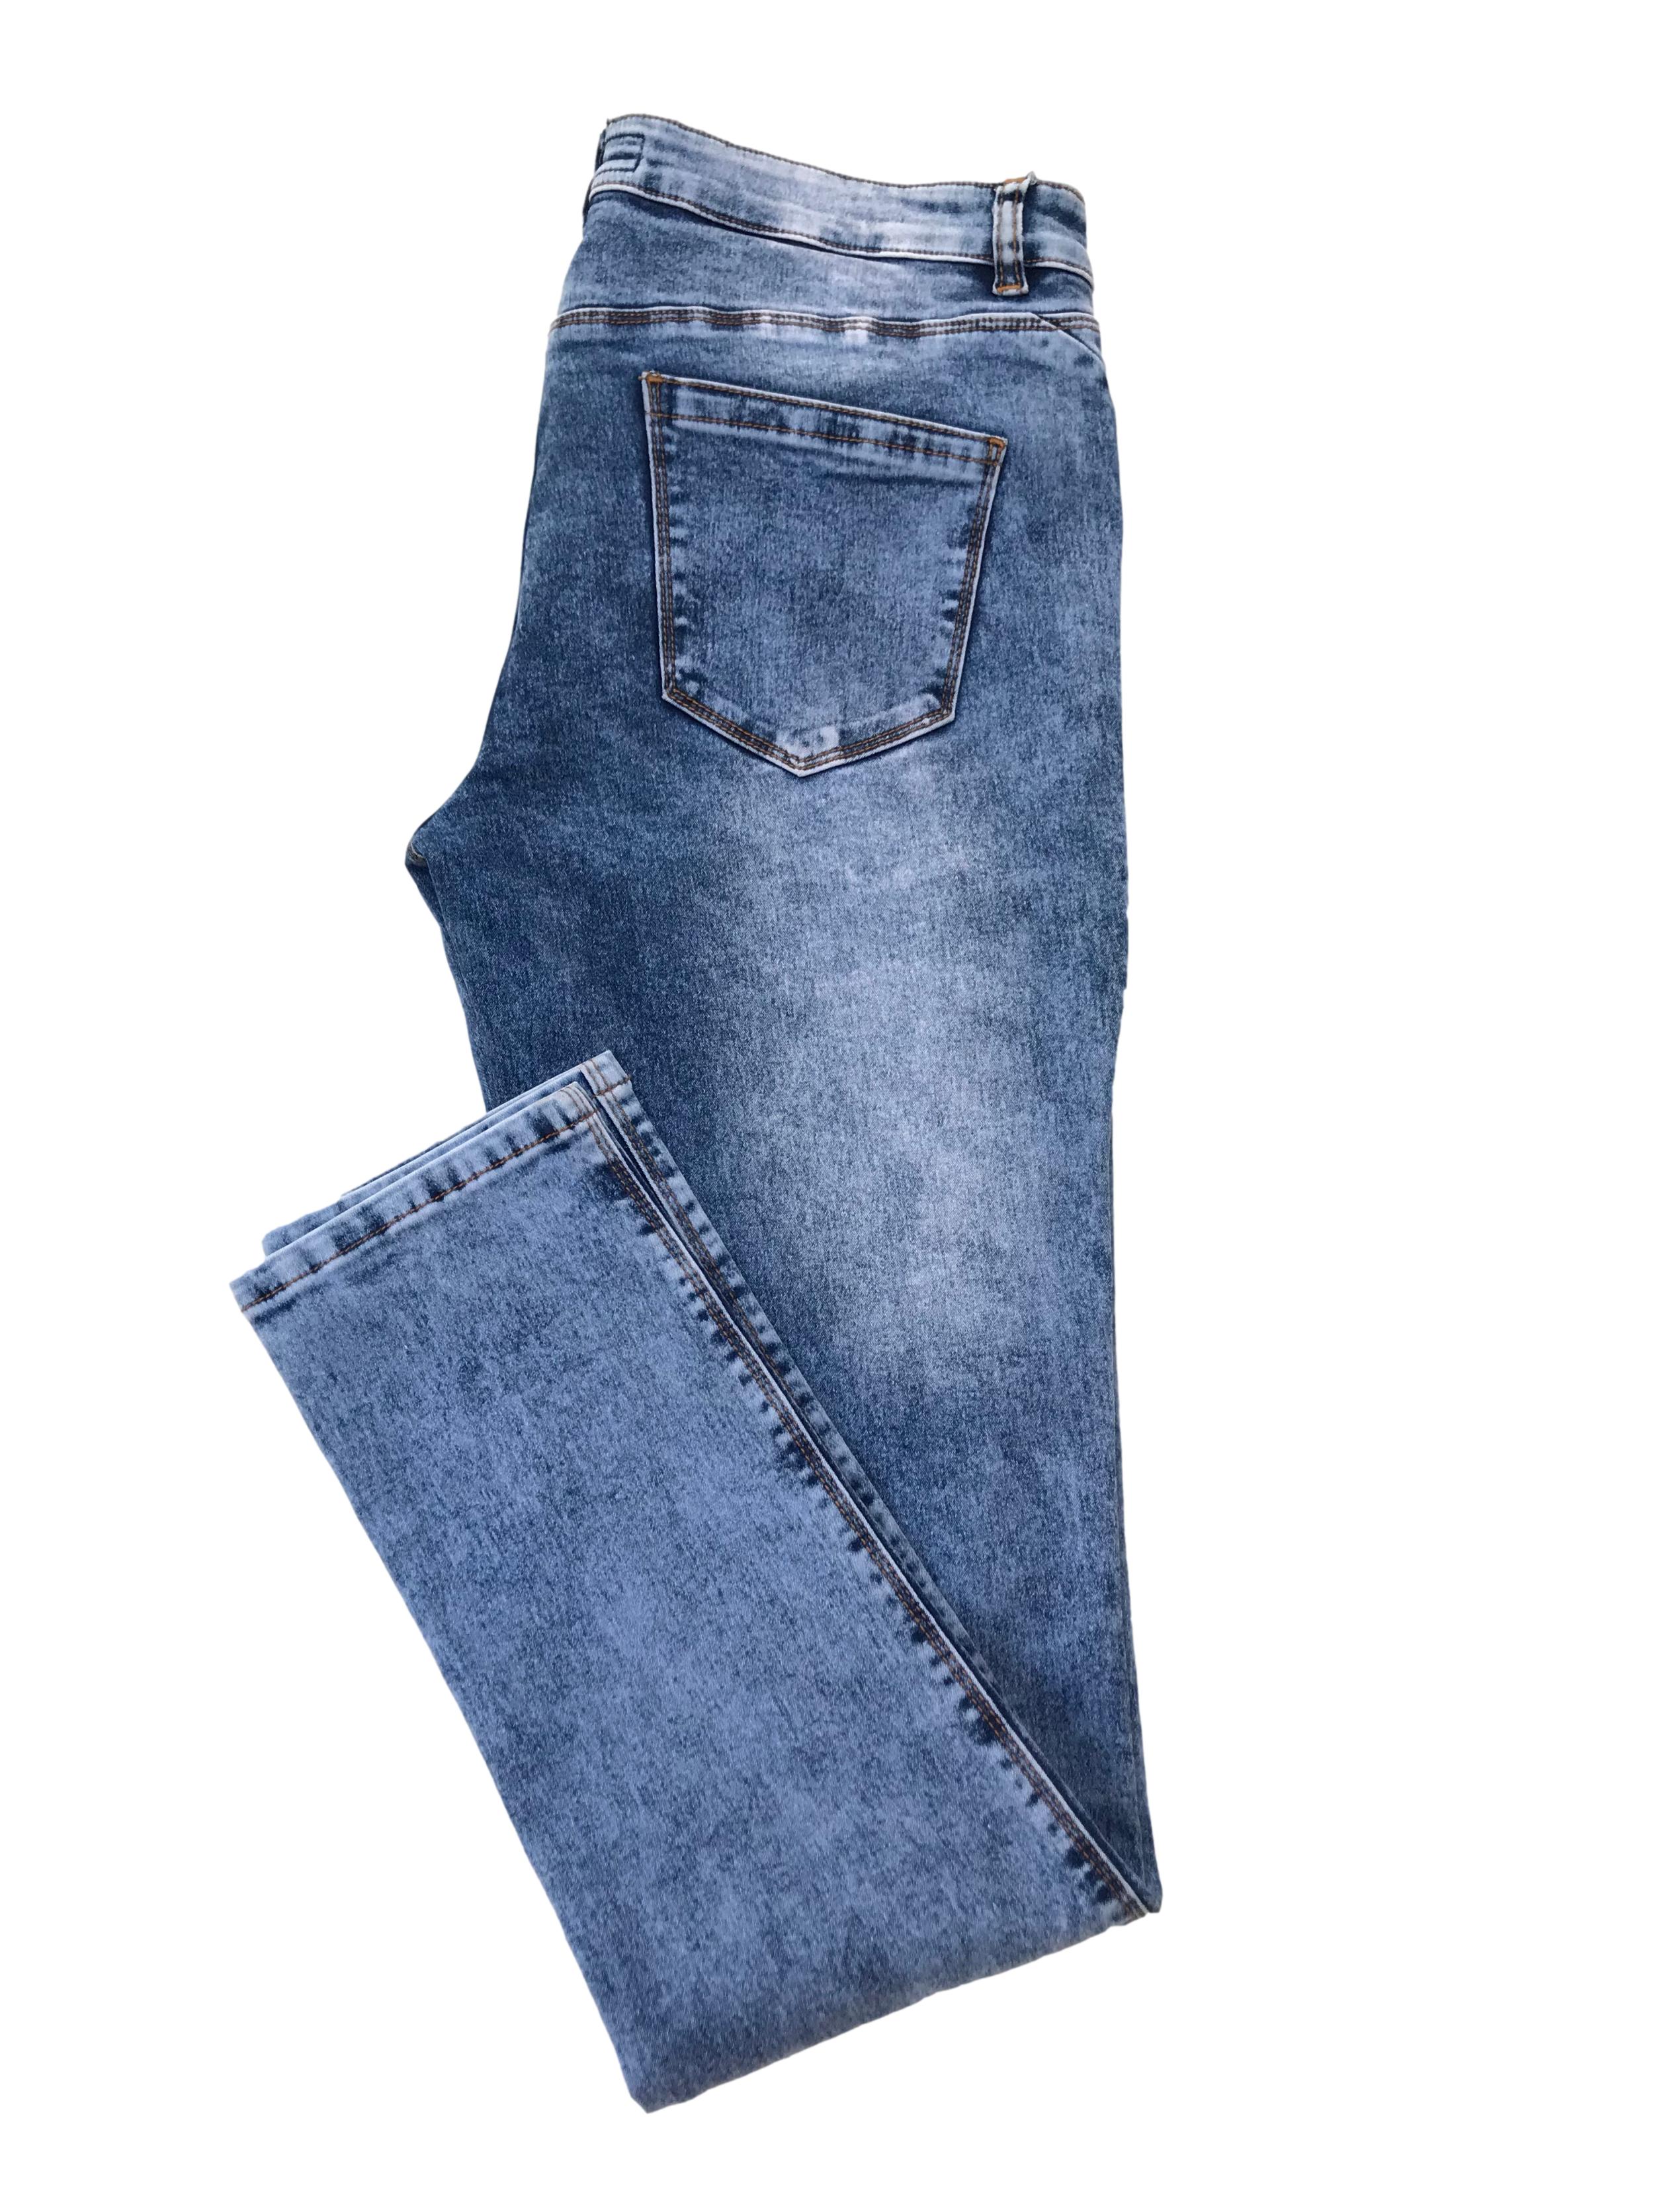 Pantalón jean stretch focalizado, con bolsilos laterales y traseros. Pretina 86cm